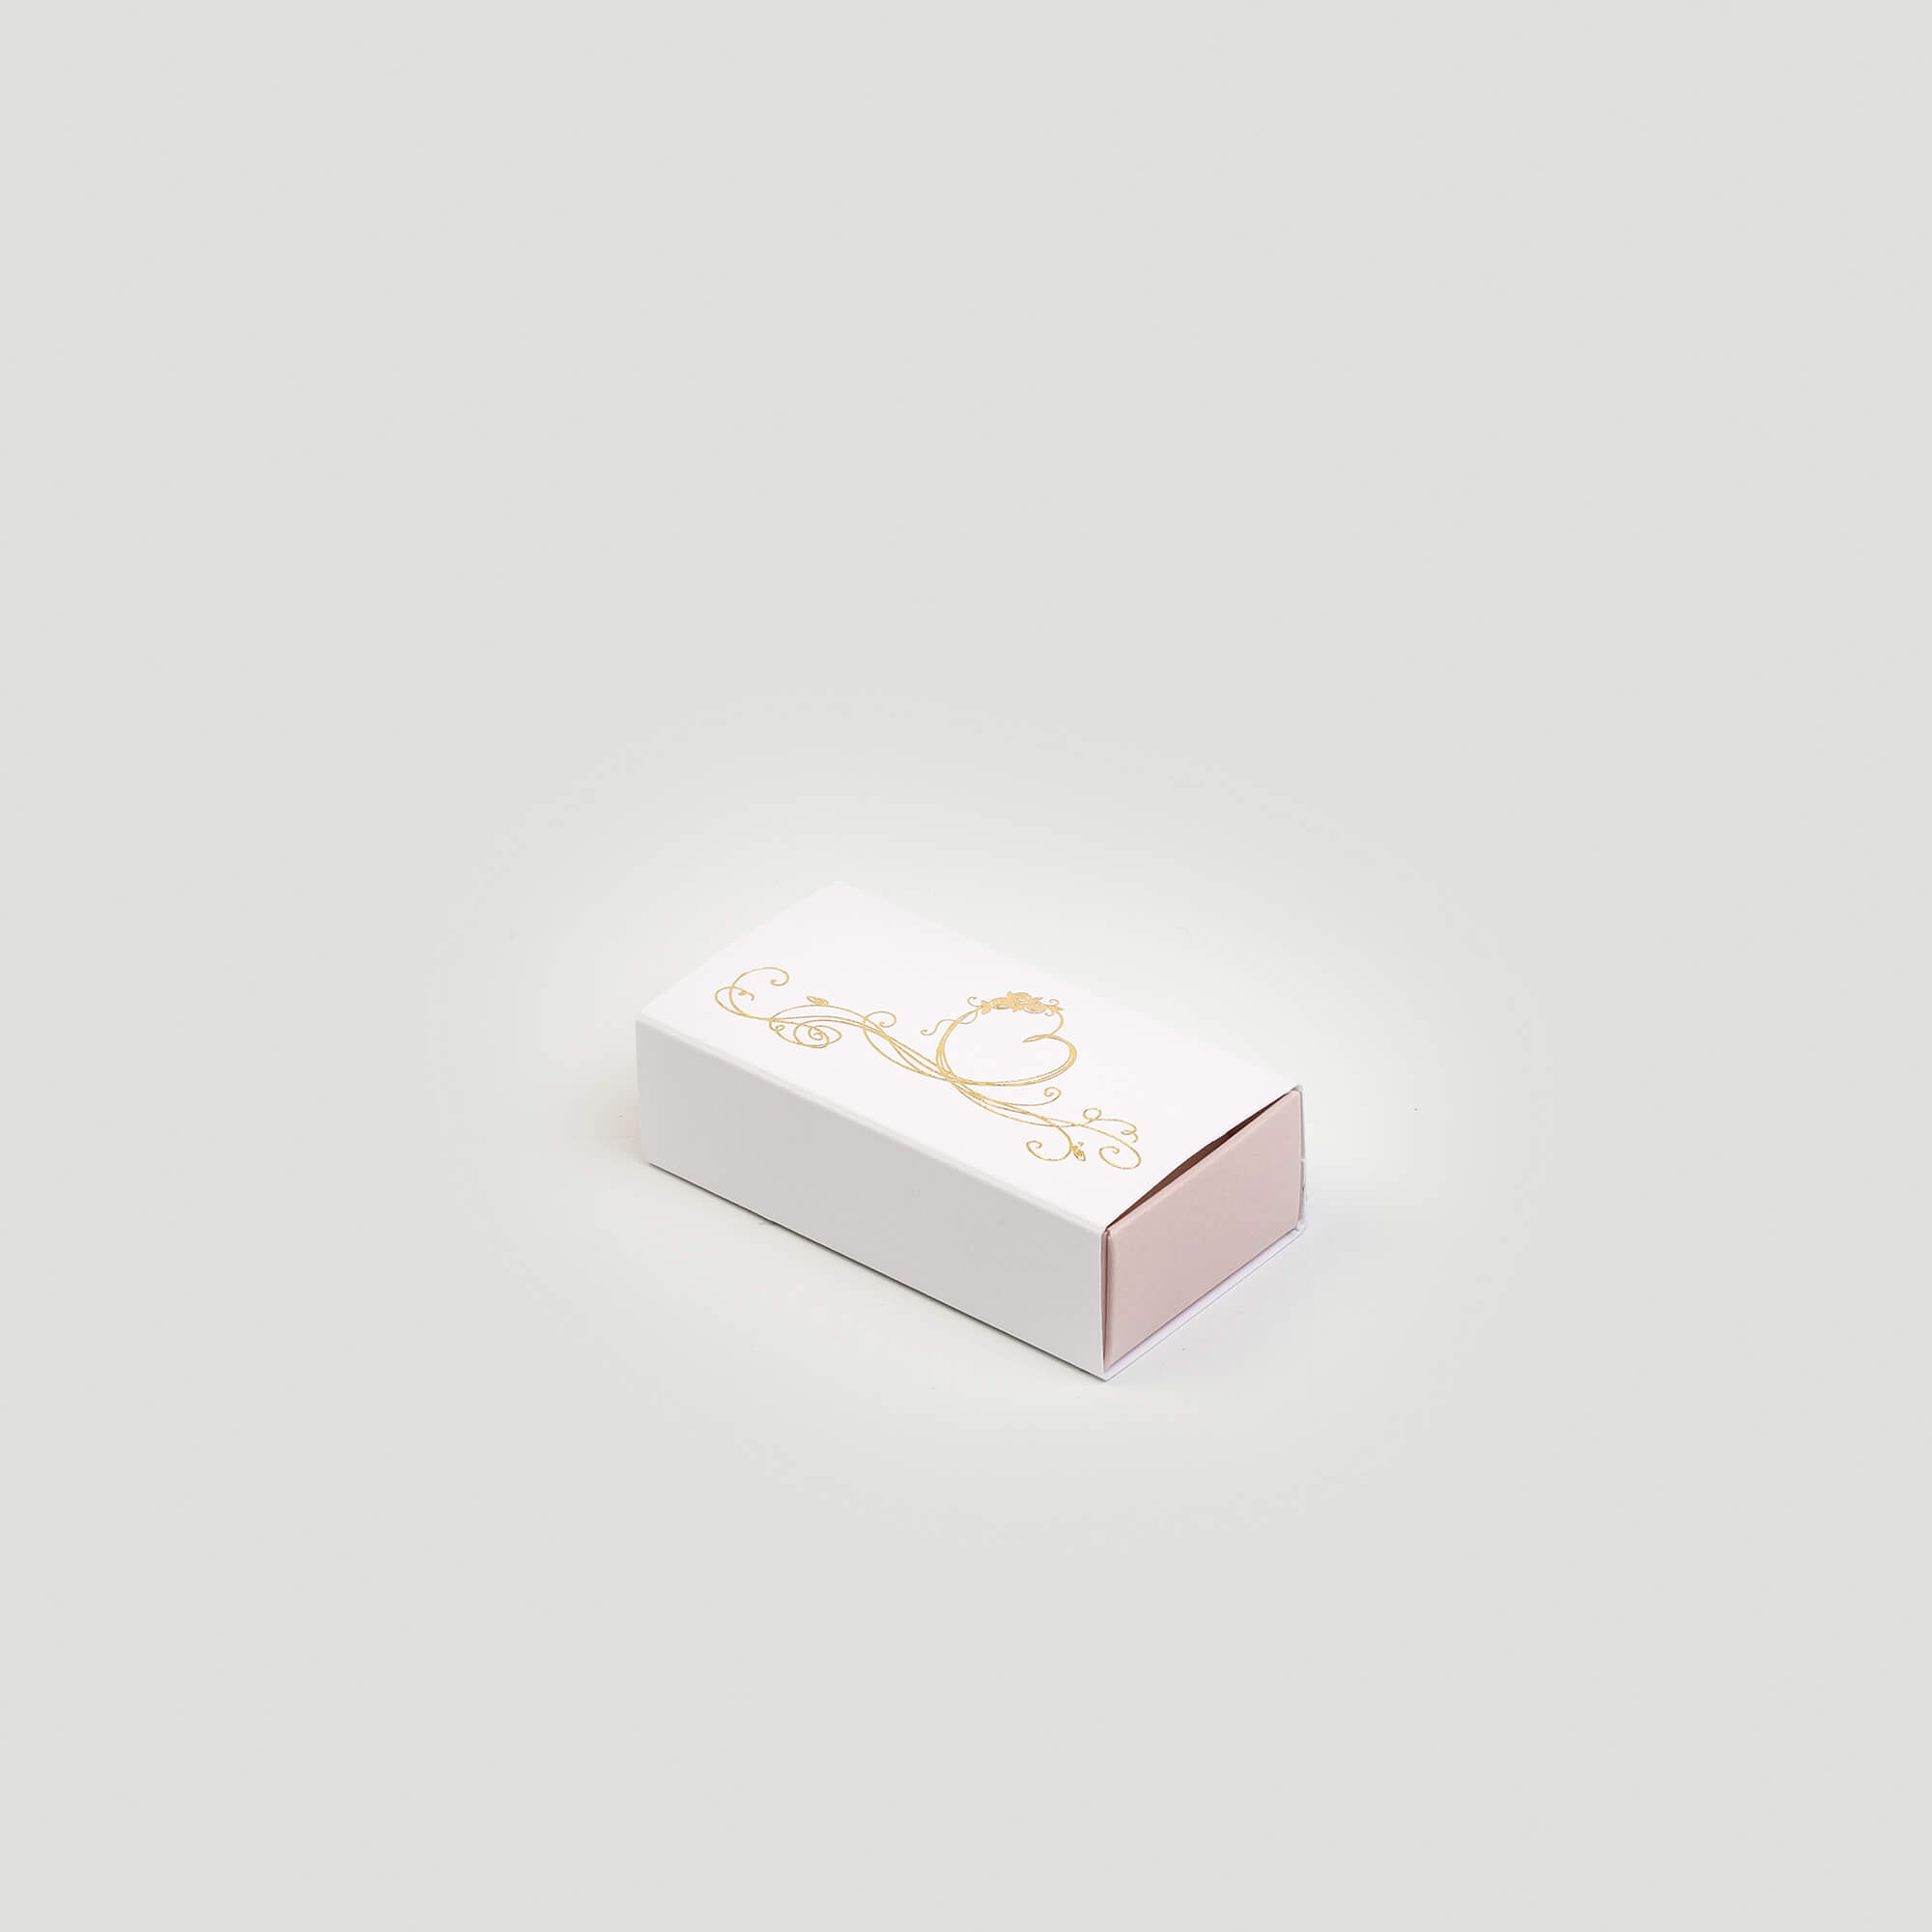 Boîte tiroir pour dragées, 40x75x23, intérieur couleur rose, extérieur couleur blanc, impression dorée